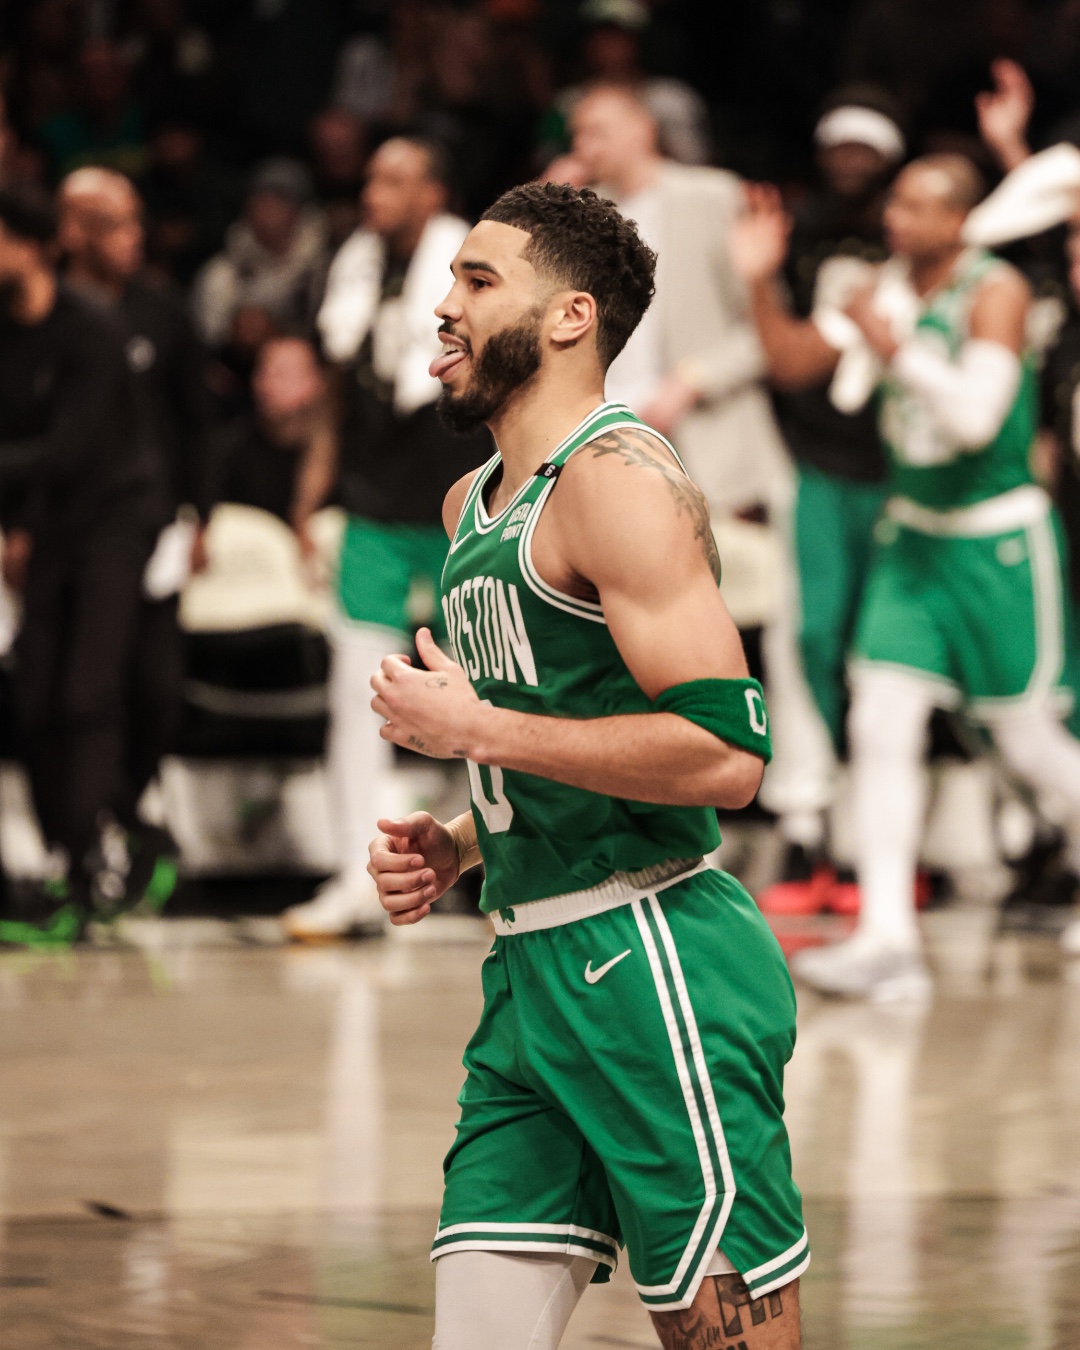 Show de Jayson Tatum en triunfo de los Boston Celtics